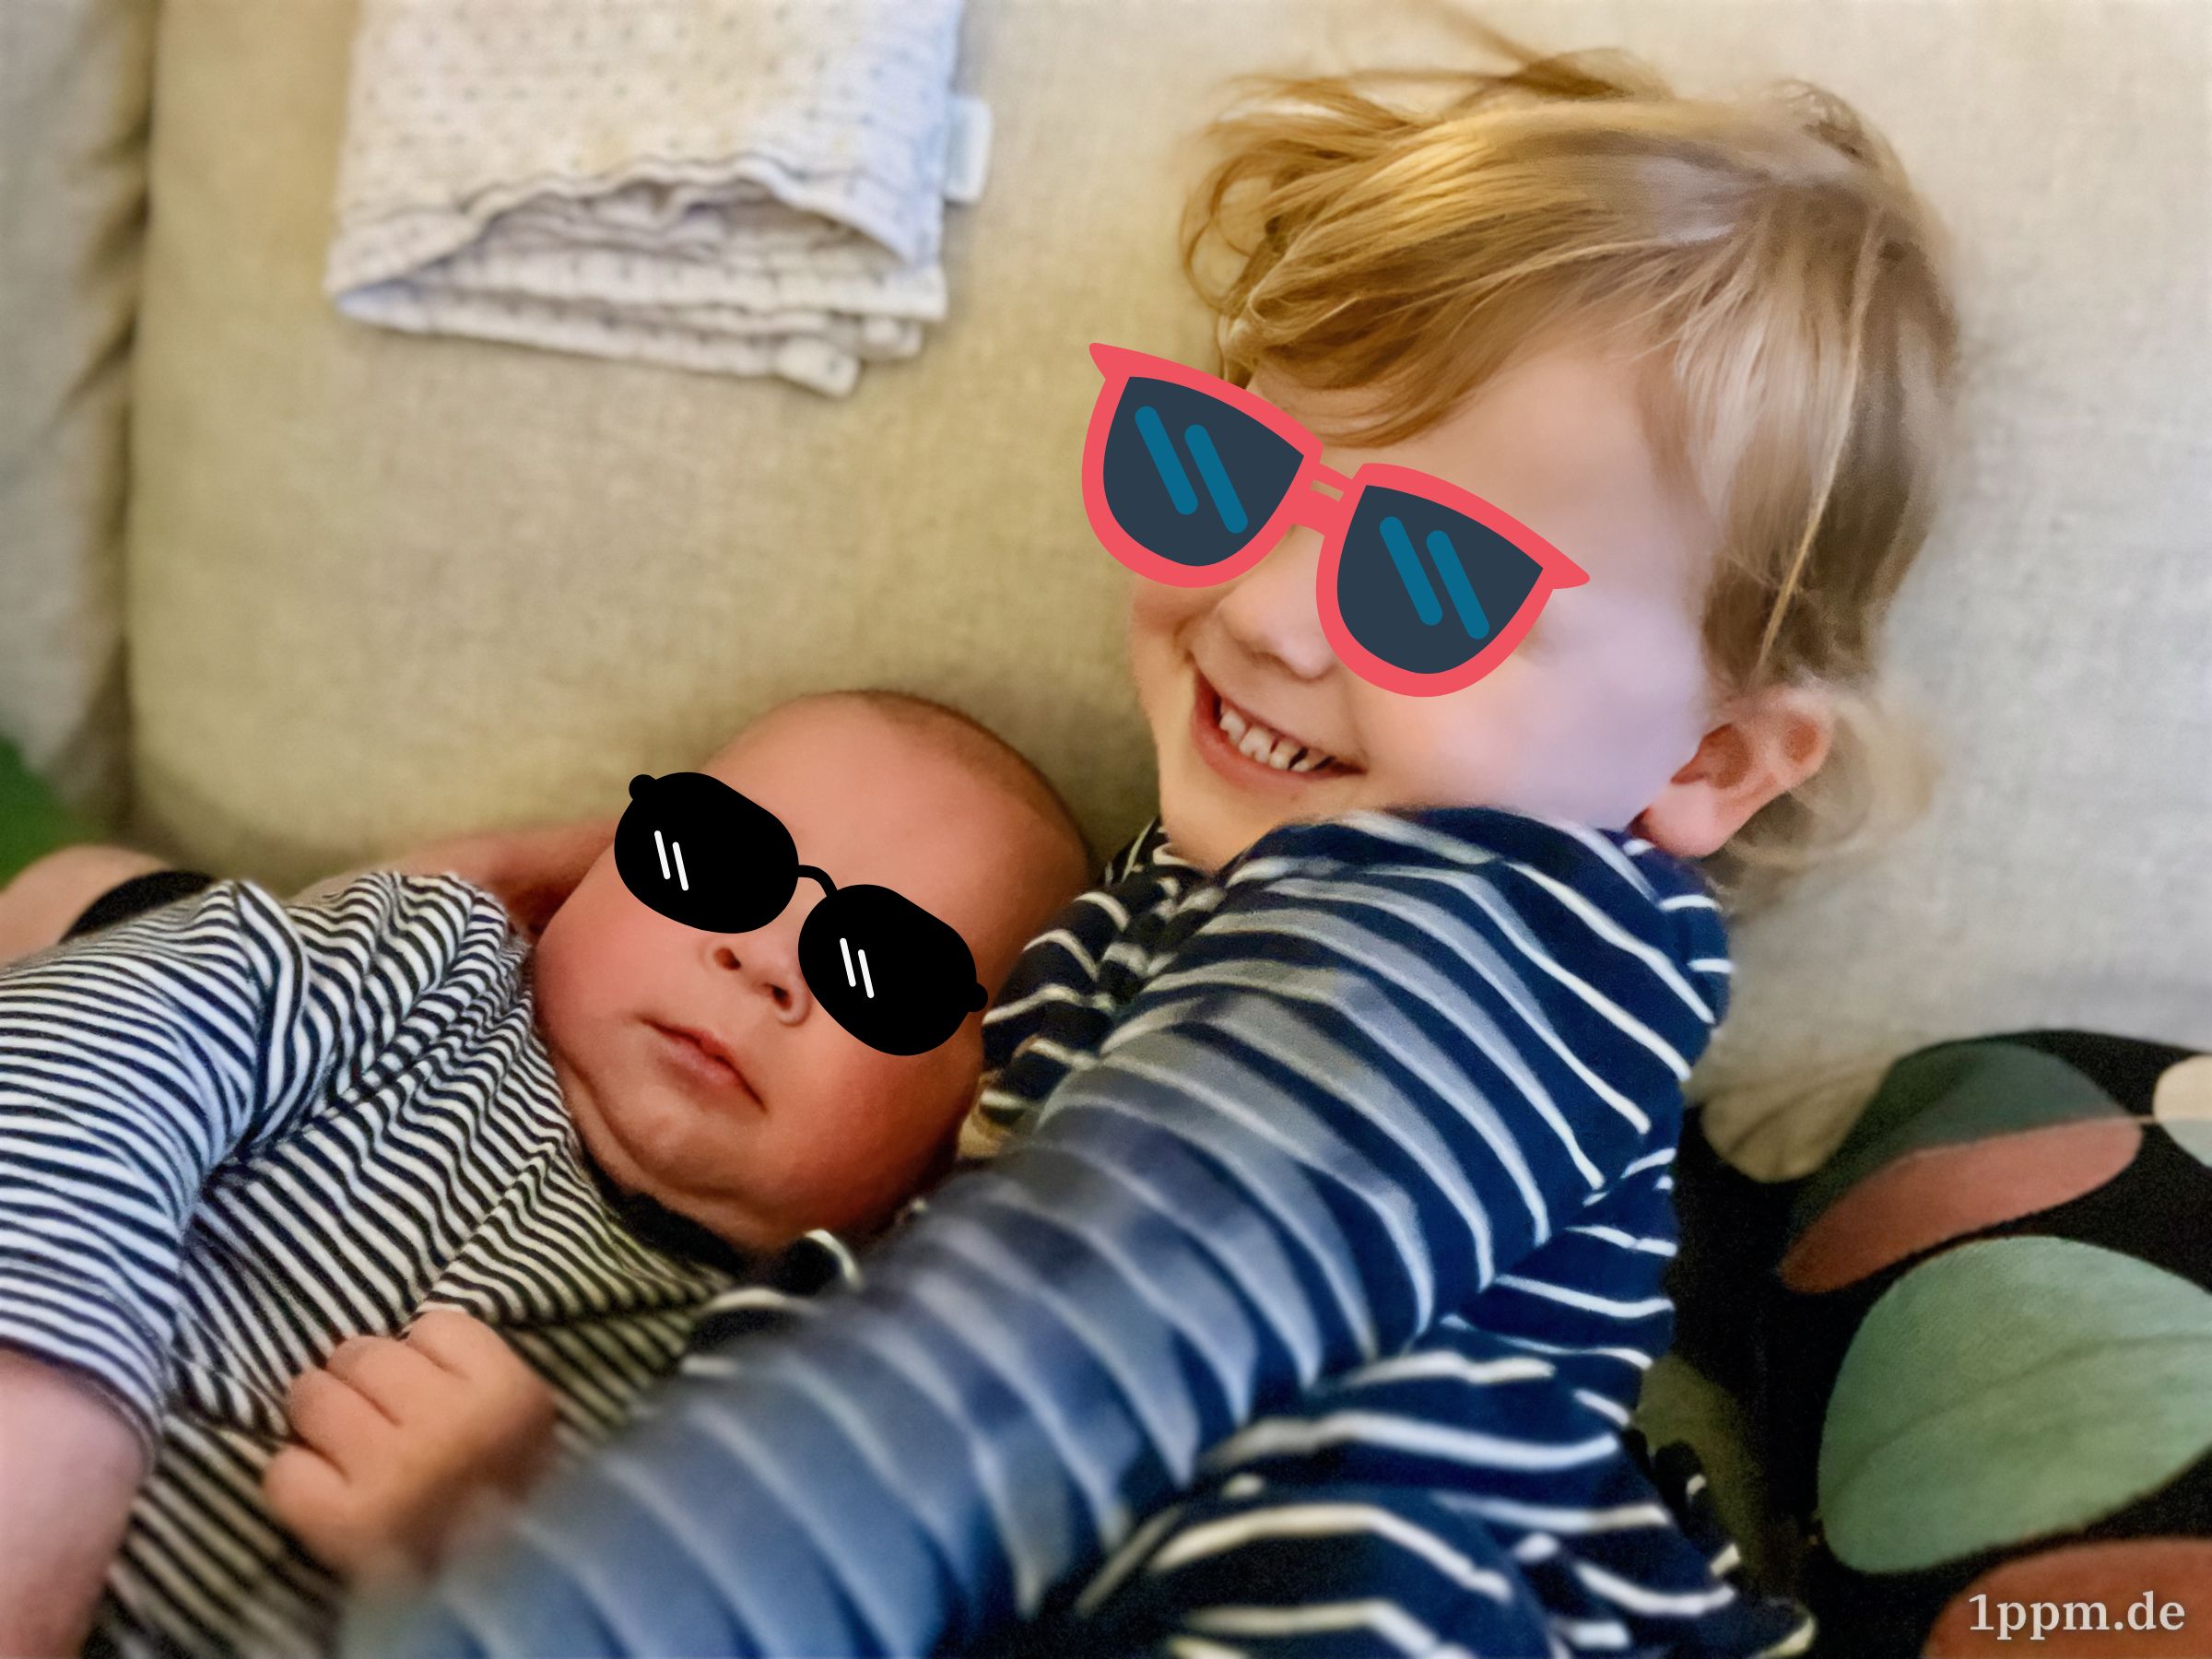 Der Babysohn und die Kleinkindtochter nebeneinander auf dem Sofa, er schmiegt sich scheinbar an sie, sie lacht ganz stolz. Auf beiden Augen wurden Sonnenbrillen retuschiert.